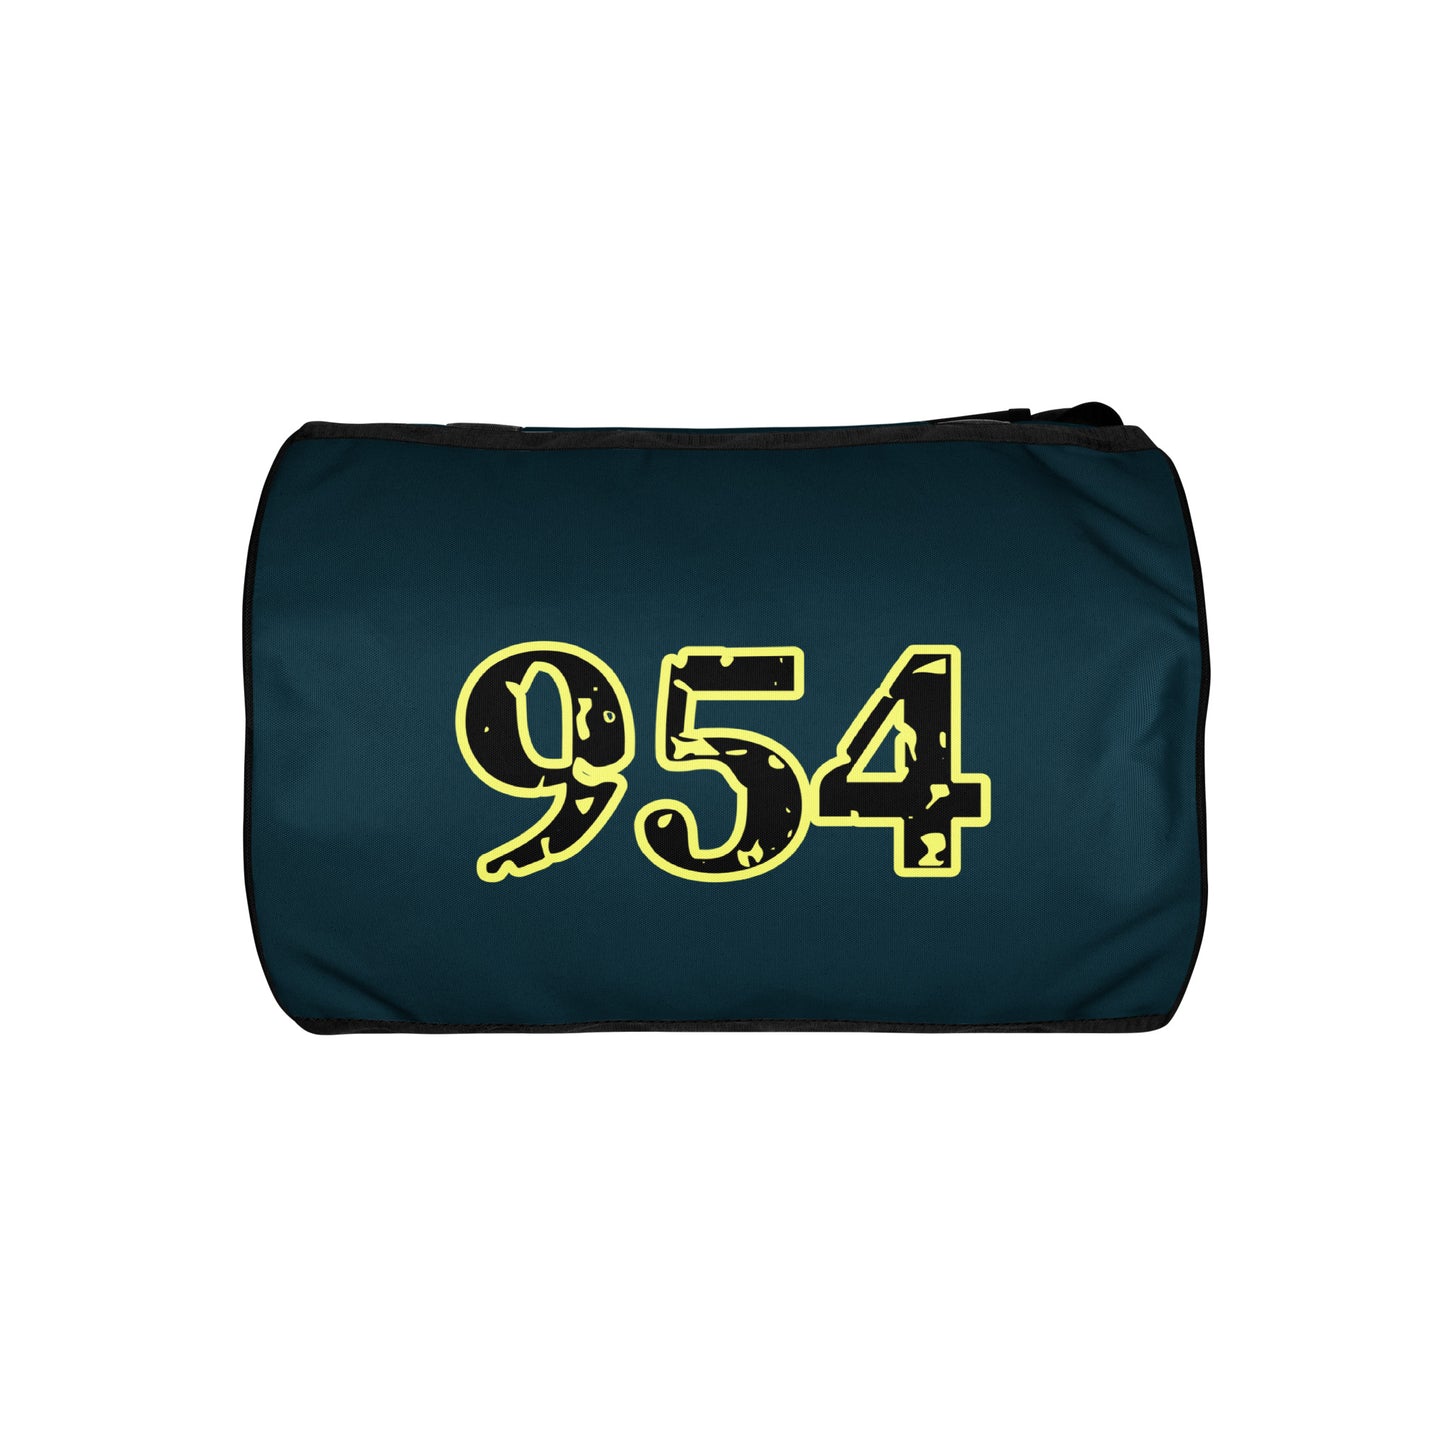 Football 954 Signature gym bag